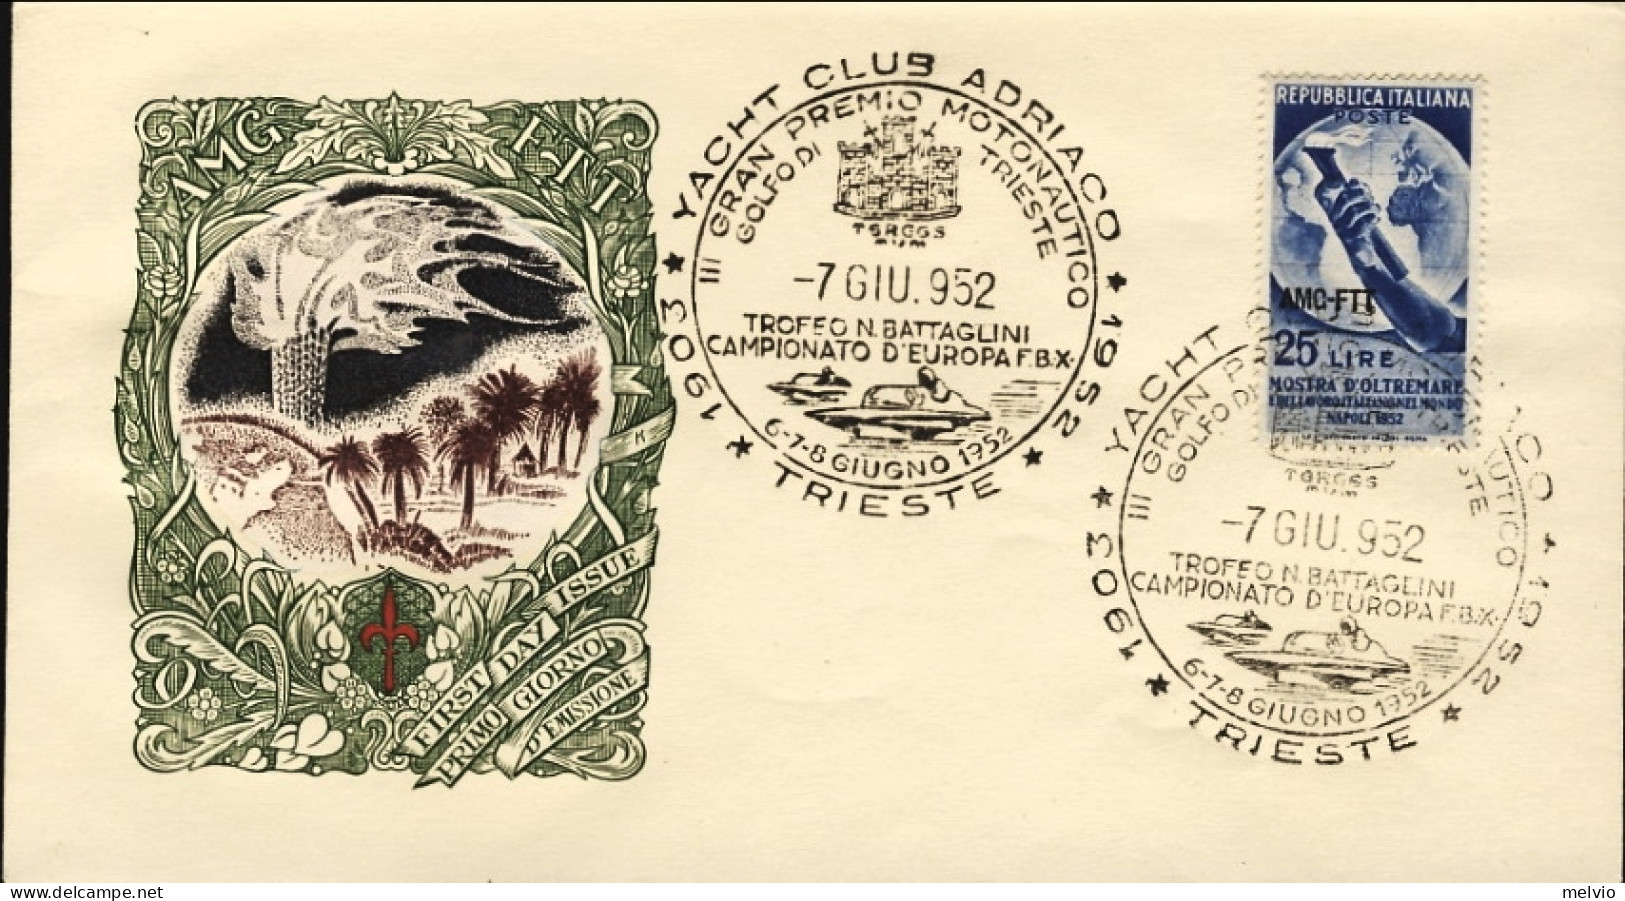 1952-Trieste A Lettera Fdc Affrancata L.25 Mostra D'oltremare Napoli Annullo Fig - Storia Postale